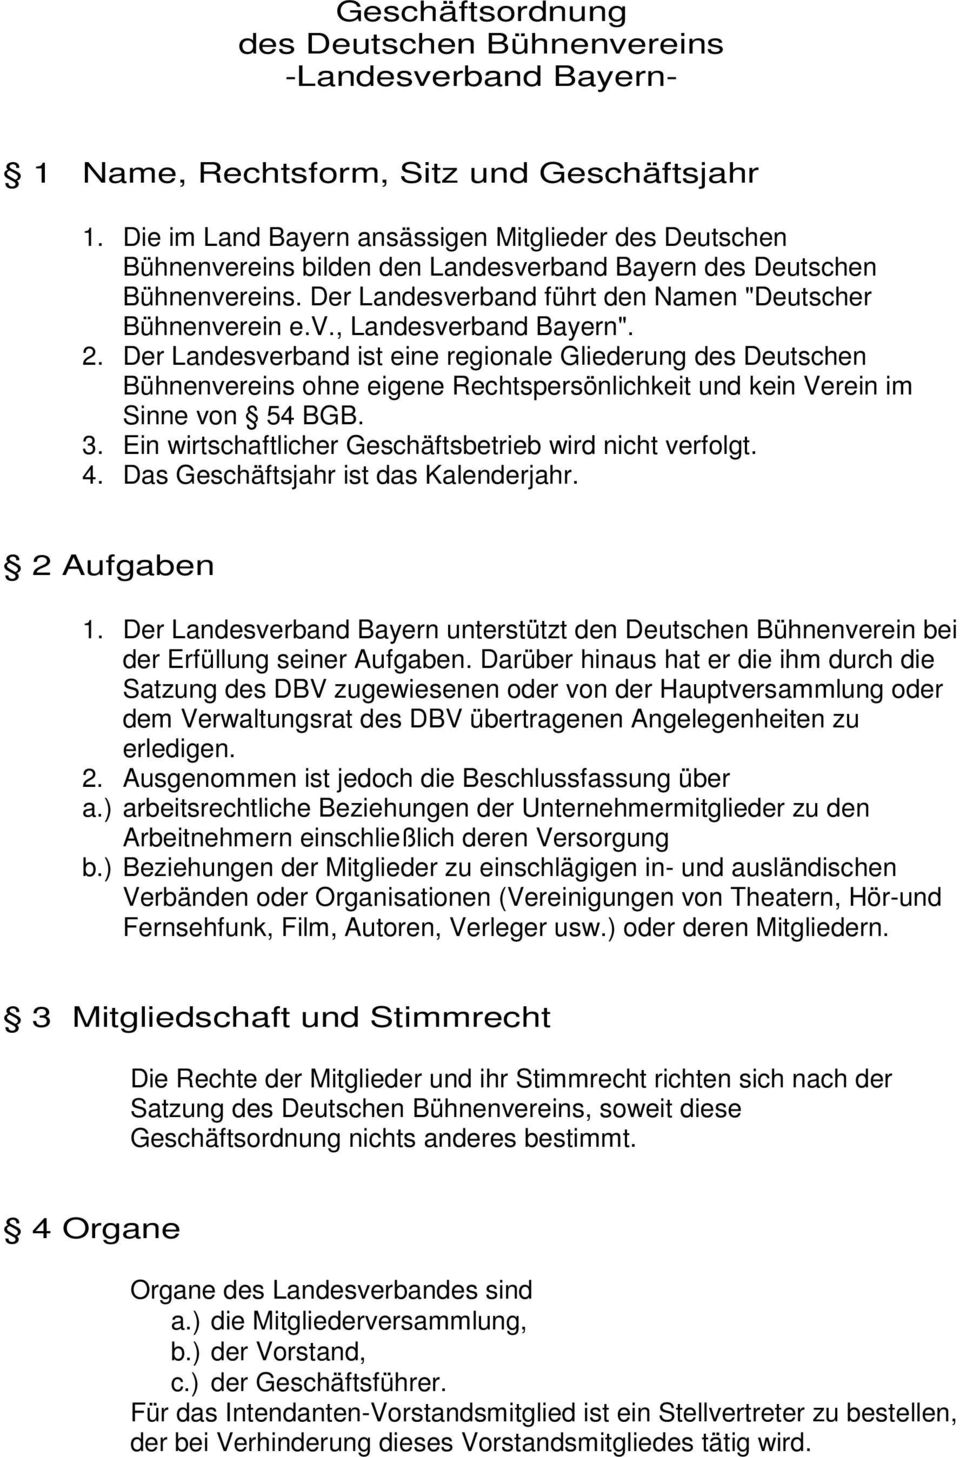 2. Der Landesverband ist eine regionale Gliederung des Deutschen Bühnenvereins ohne eigene Rechtspersönlichkeit und kein Verein im Sinne von 54 BGB. 3.